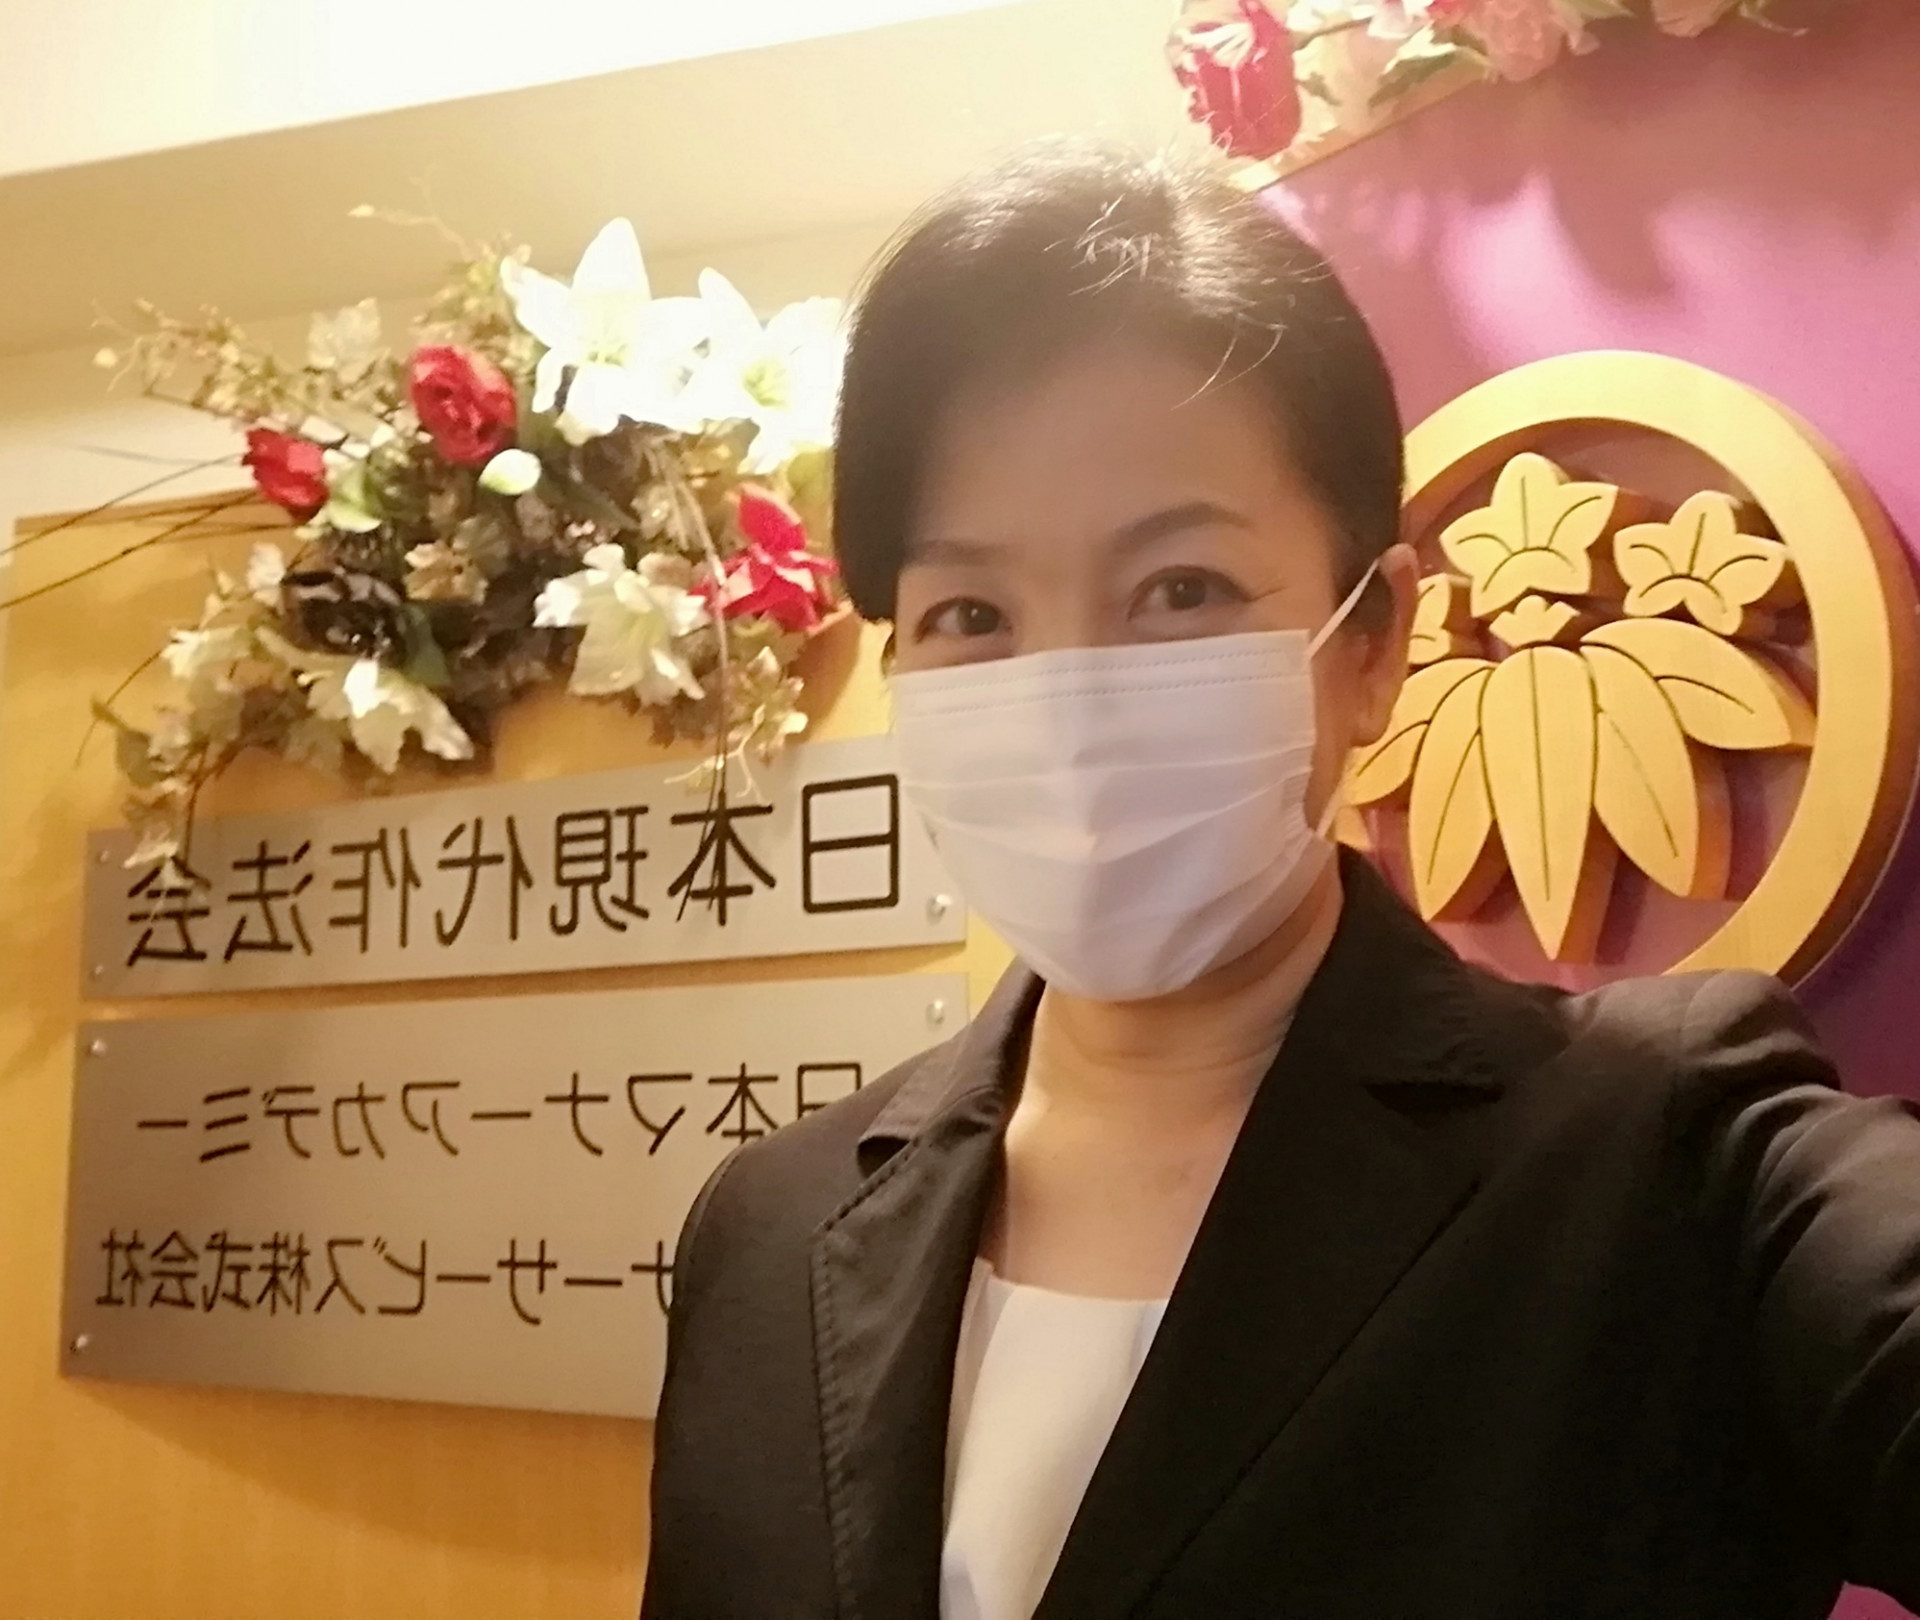 新しい生活様式マスクのマナーは|日本マナーサービス株式会社|